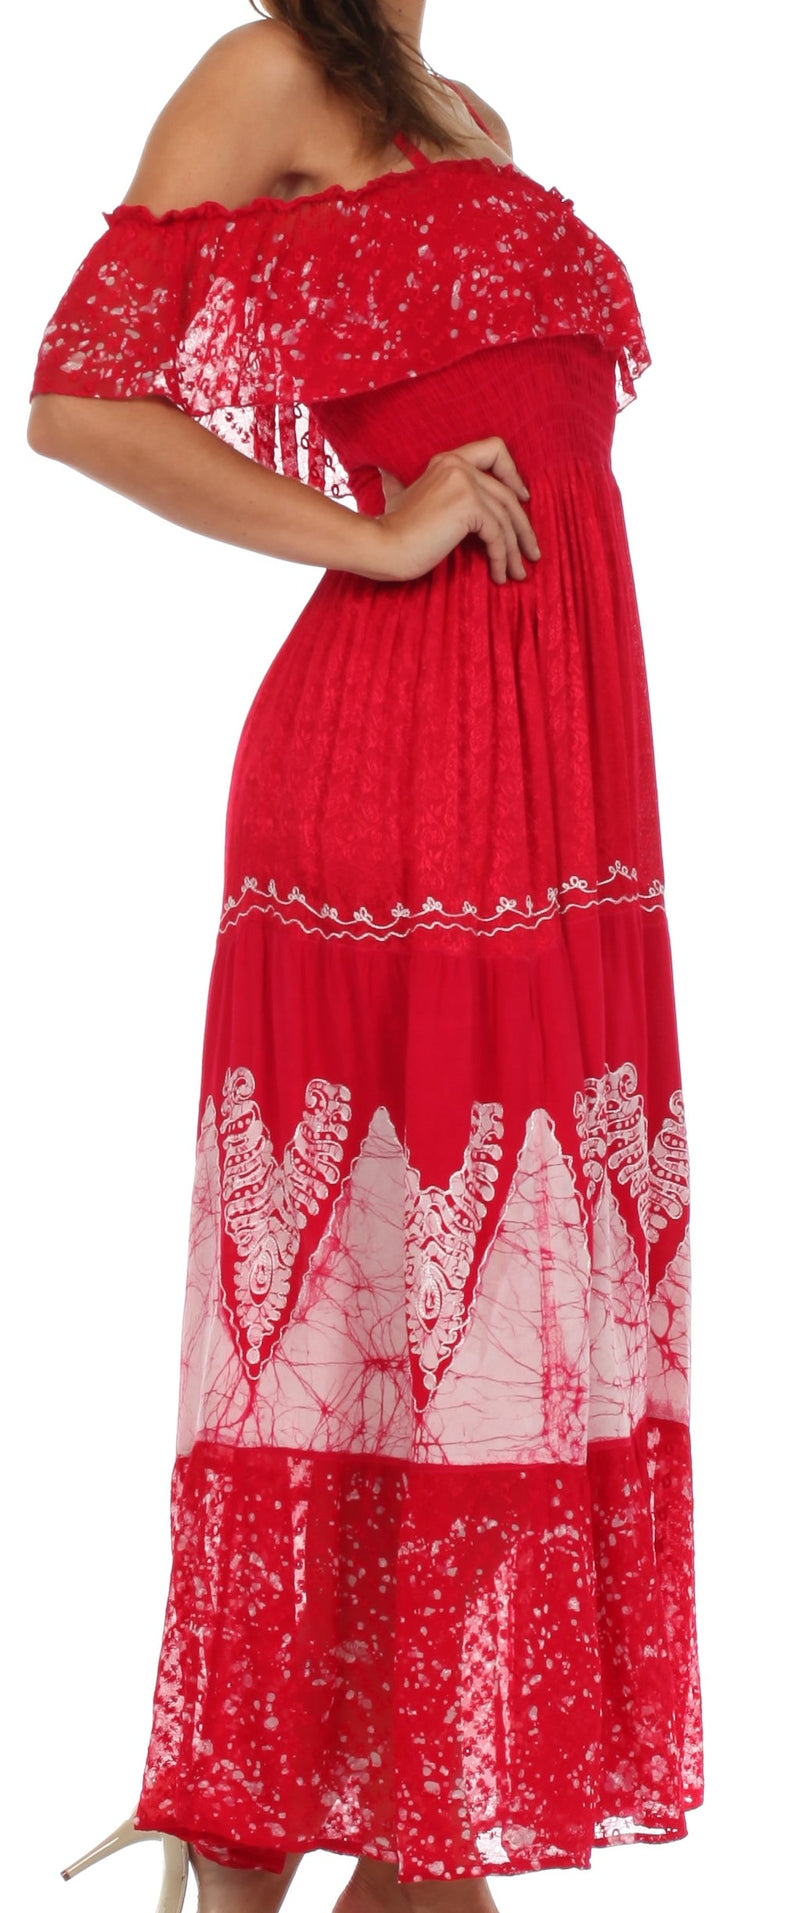 Sakkas Tiva Batik Embroidered Jacquard Off Shoulder Peasant Dress